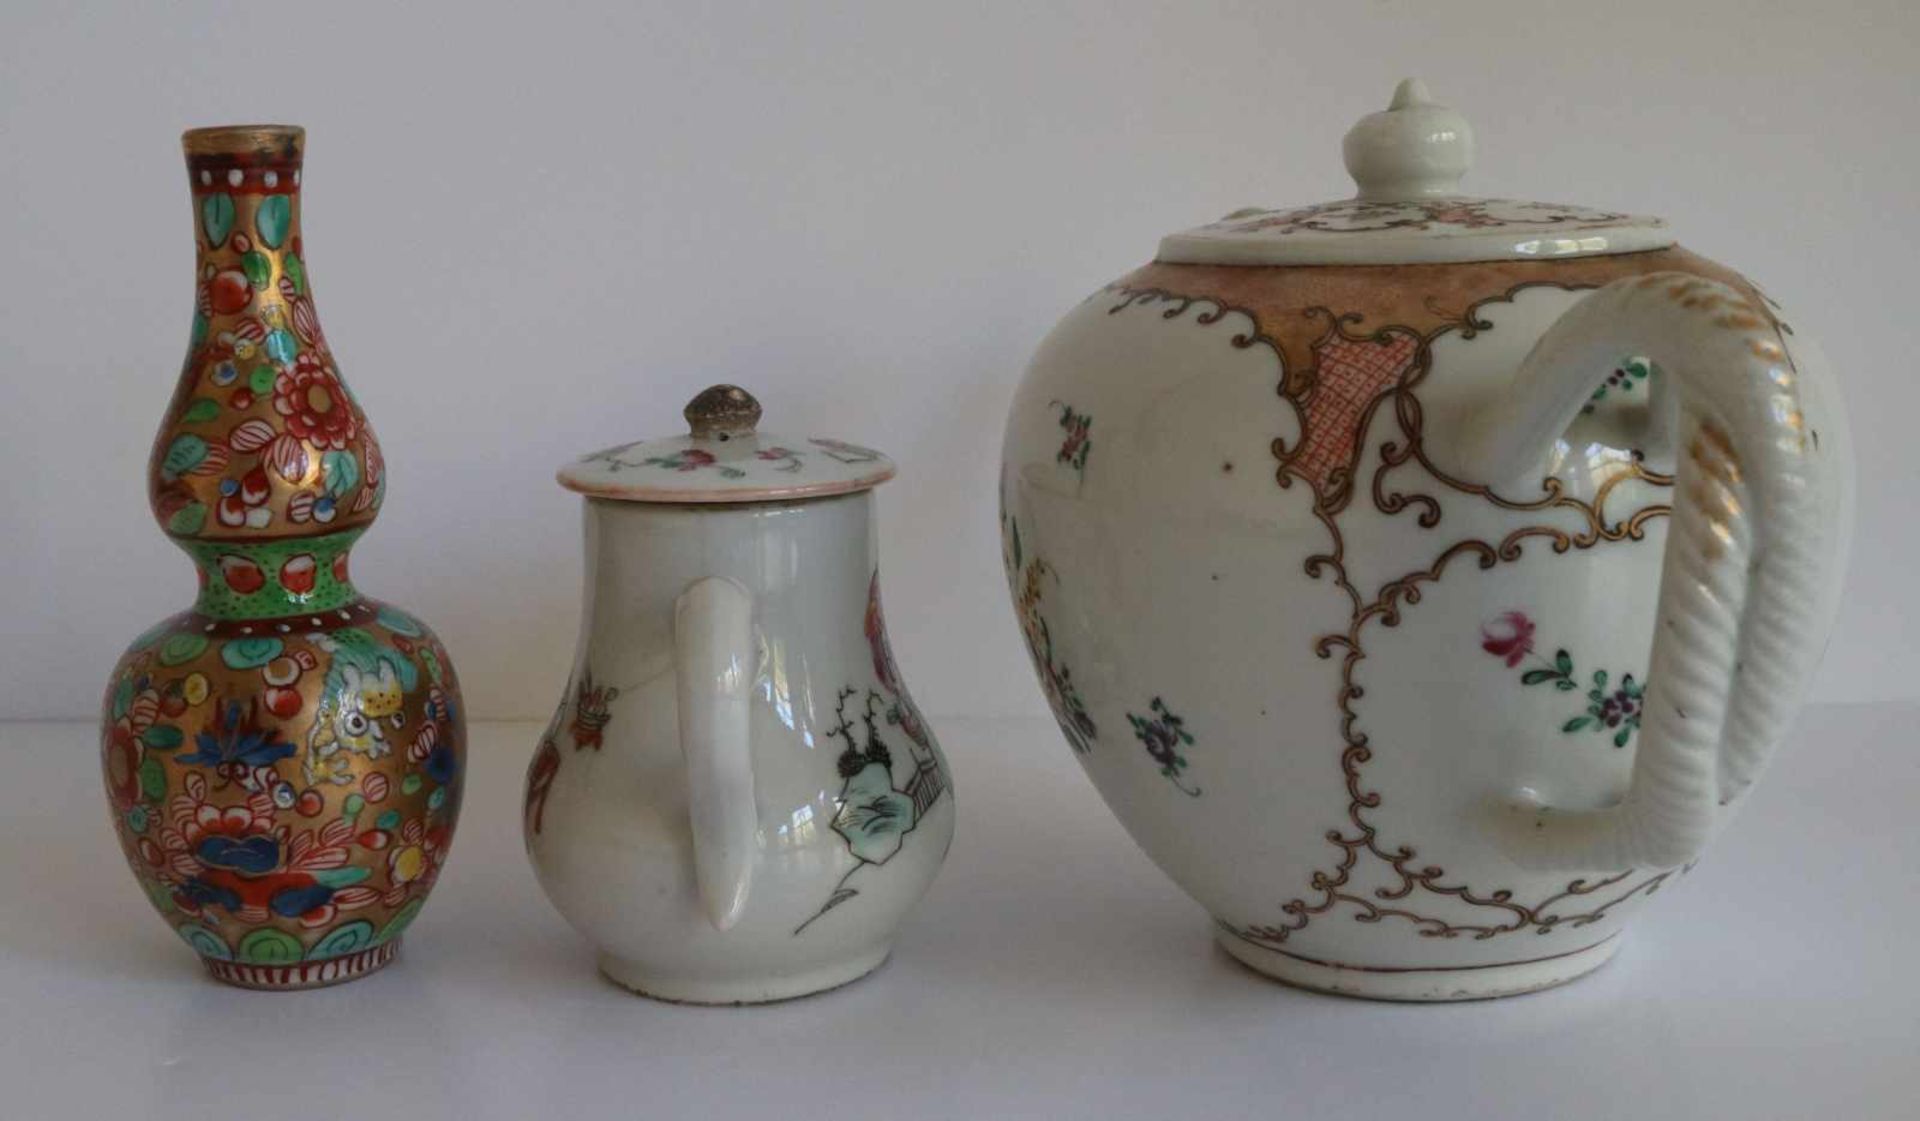 Porcelain Teapot Chine de commande, calebas vase Samson and teapot (crack) H 9,5 tot 13,5 cm - Bild 2 aus 6